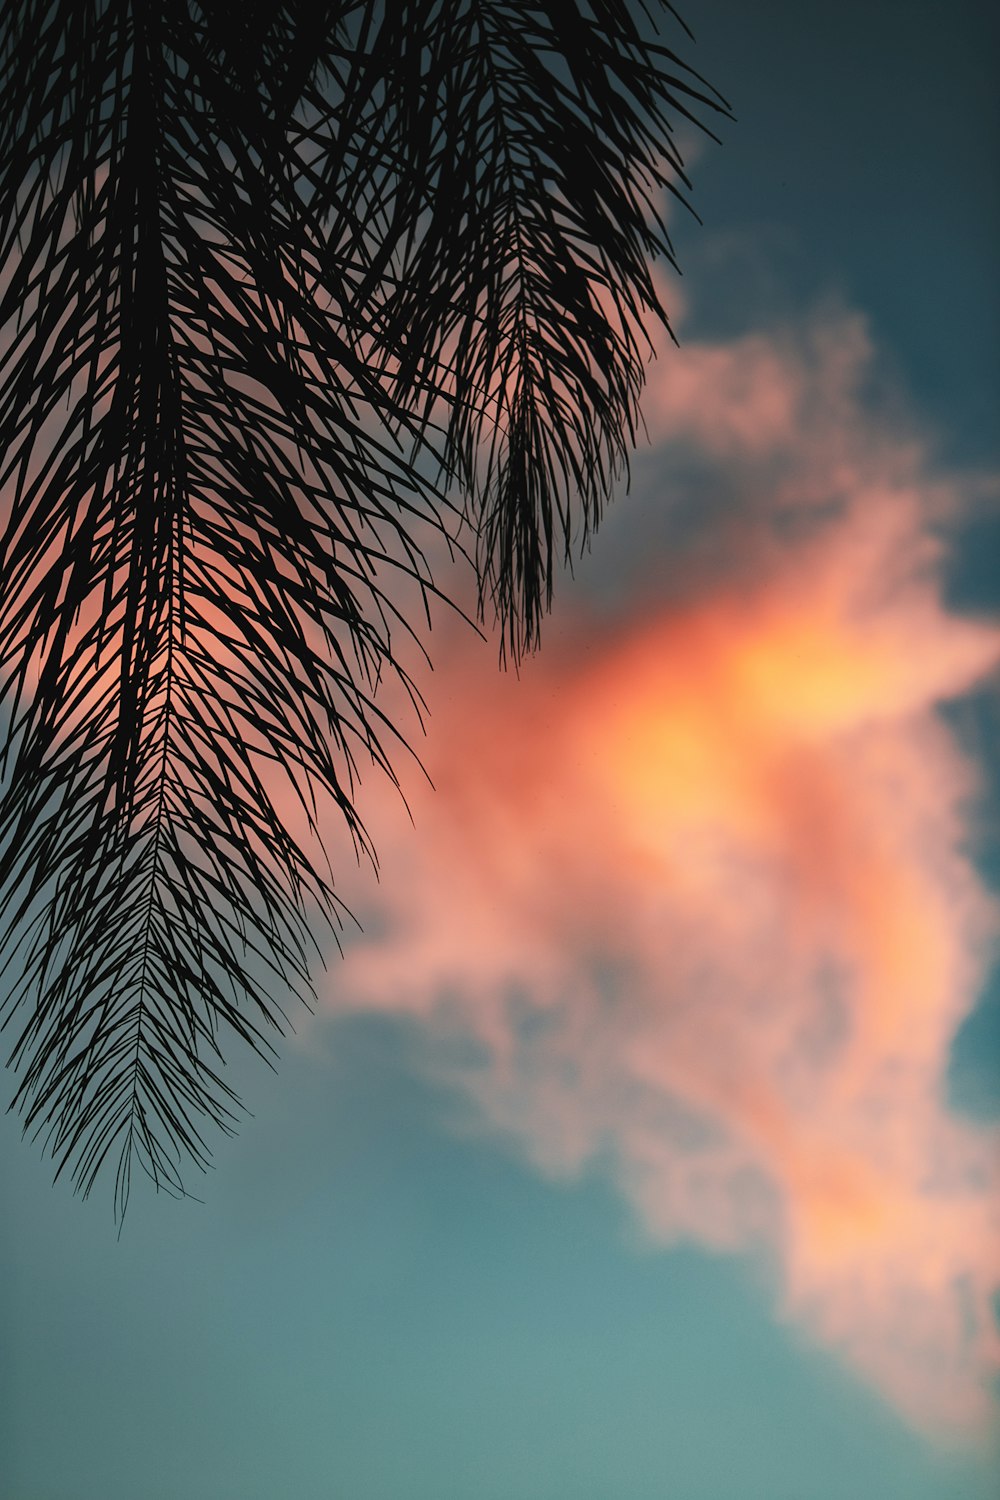 Silueta de hojas de palma